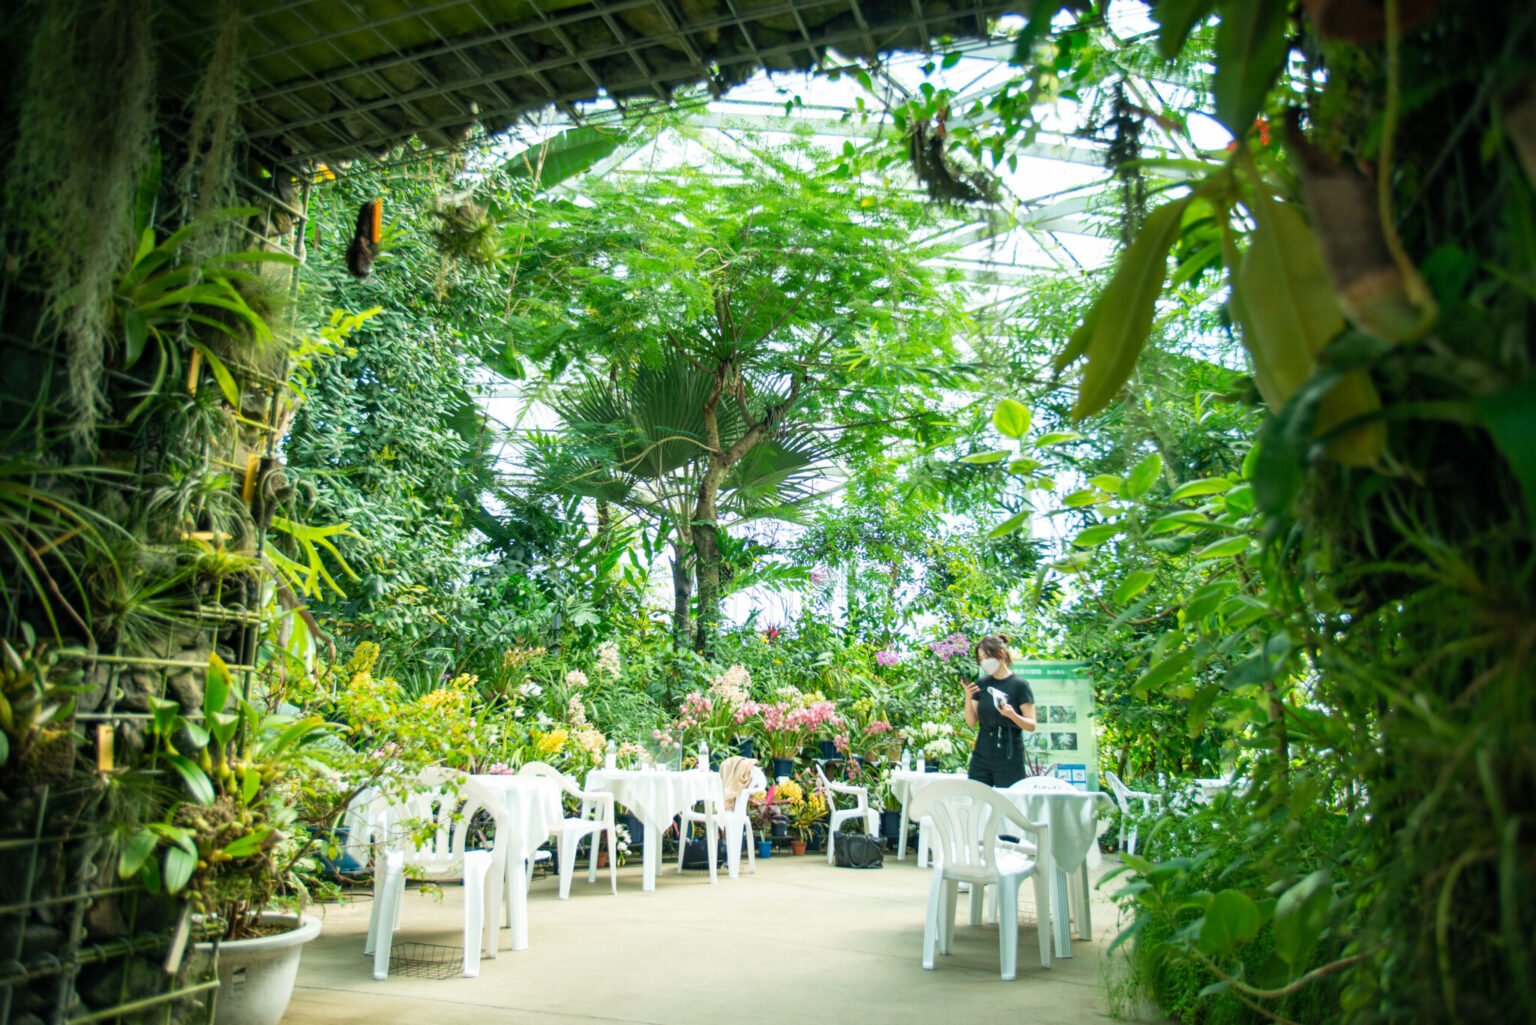 新宿御苑は“都会のオアシス”として知られており、温室では、熱帯・亜熱帯の植物を中心に約2,700種が栽培されています。